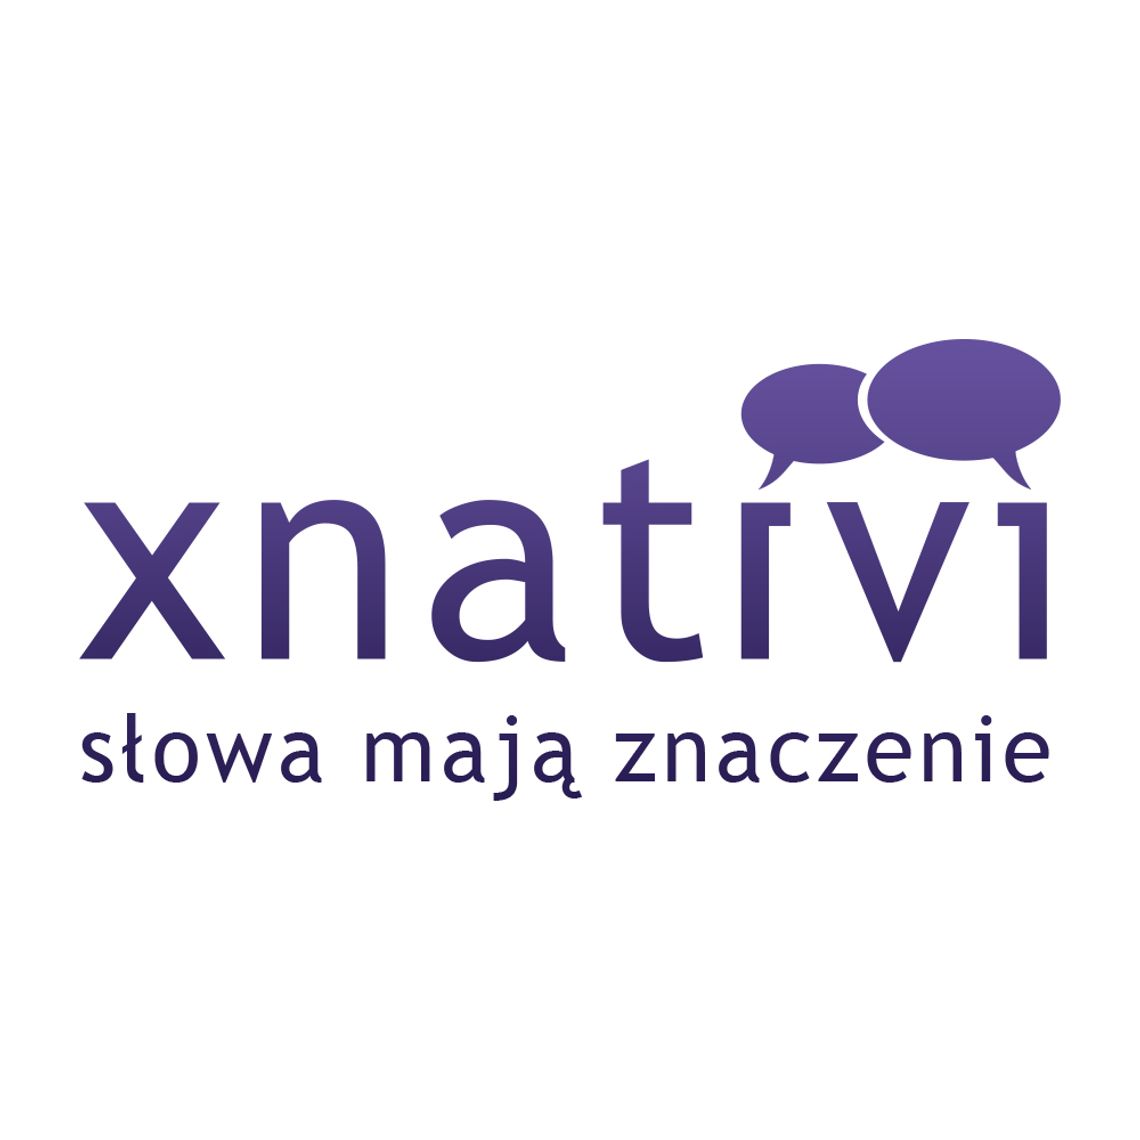 Biuro copywritingu xnativi - Teksty i opisy w obcych językach